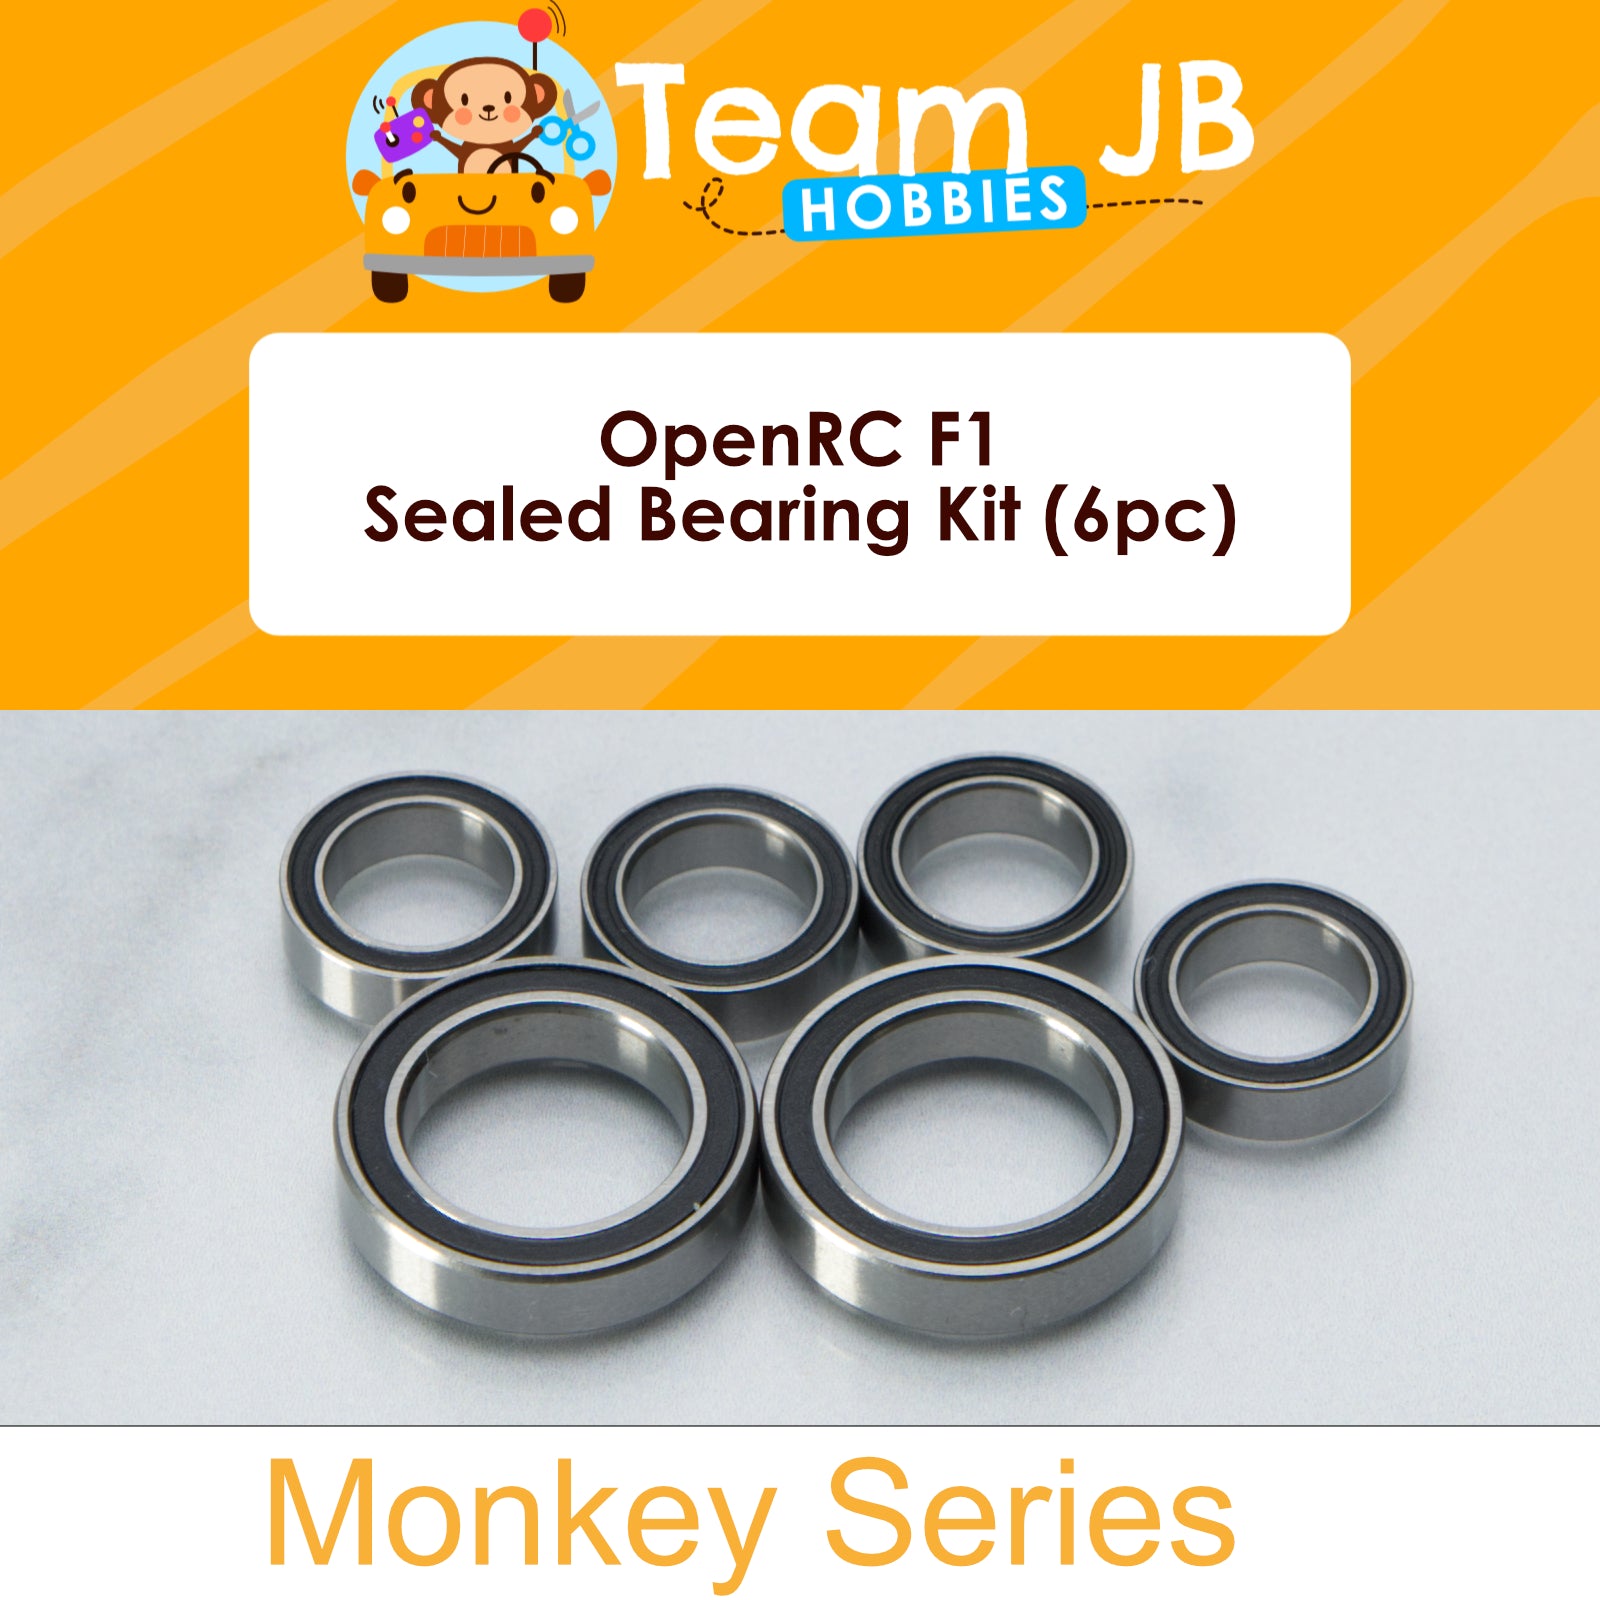 OpenRC F1 - Sealed Bearing Kit